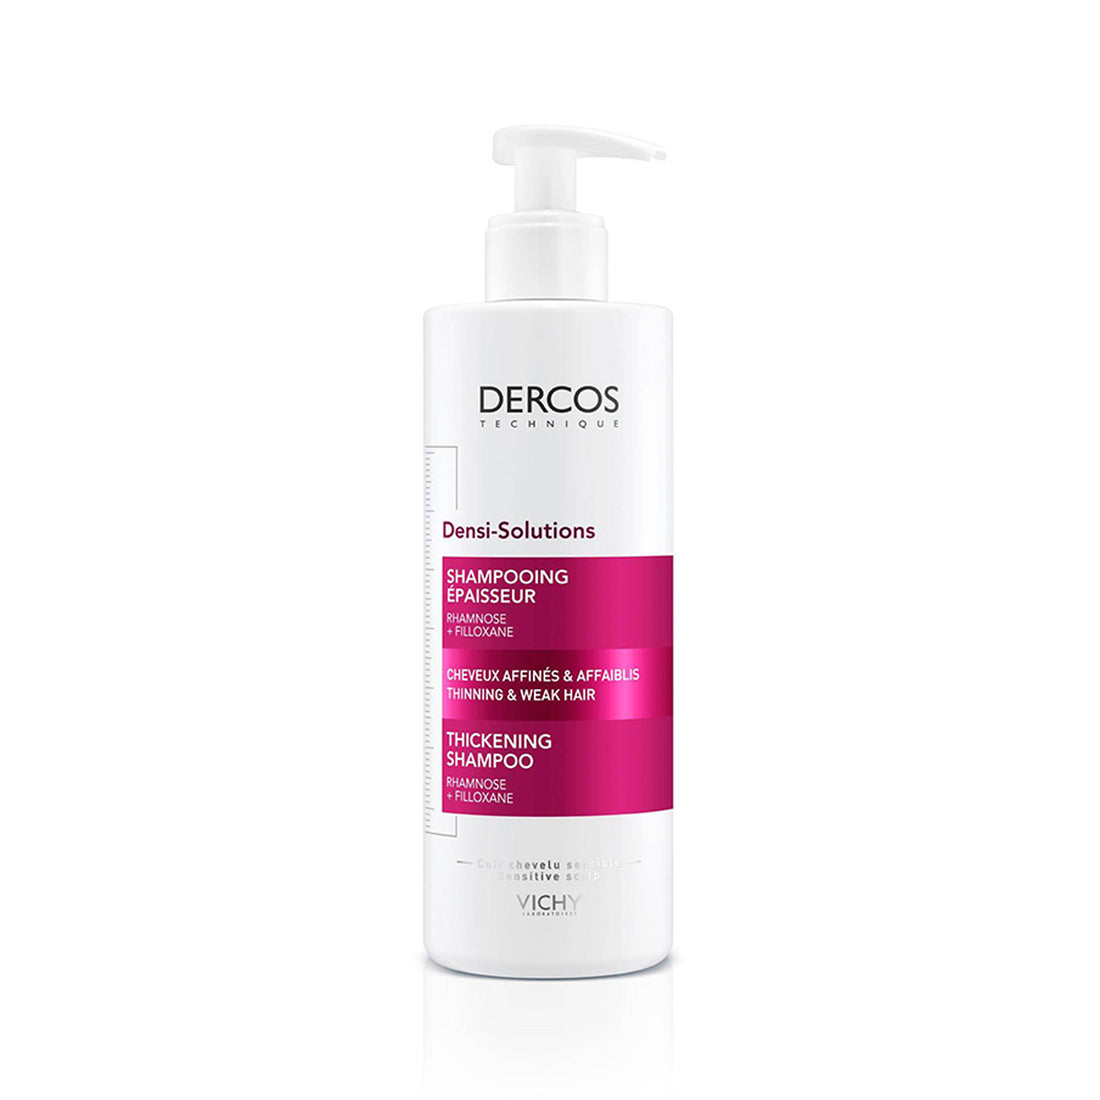 Vichy Dercos Densi-Solutions Thickening Shampoo 400ml (13.53fl oz)